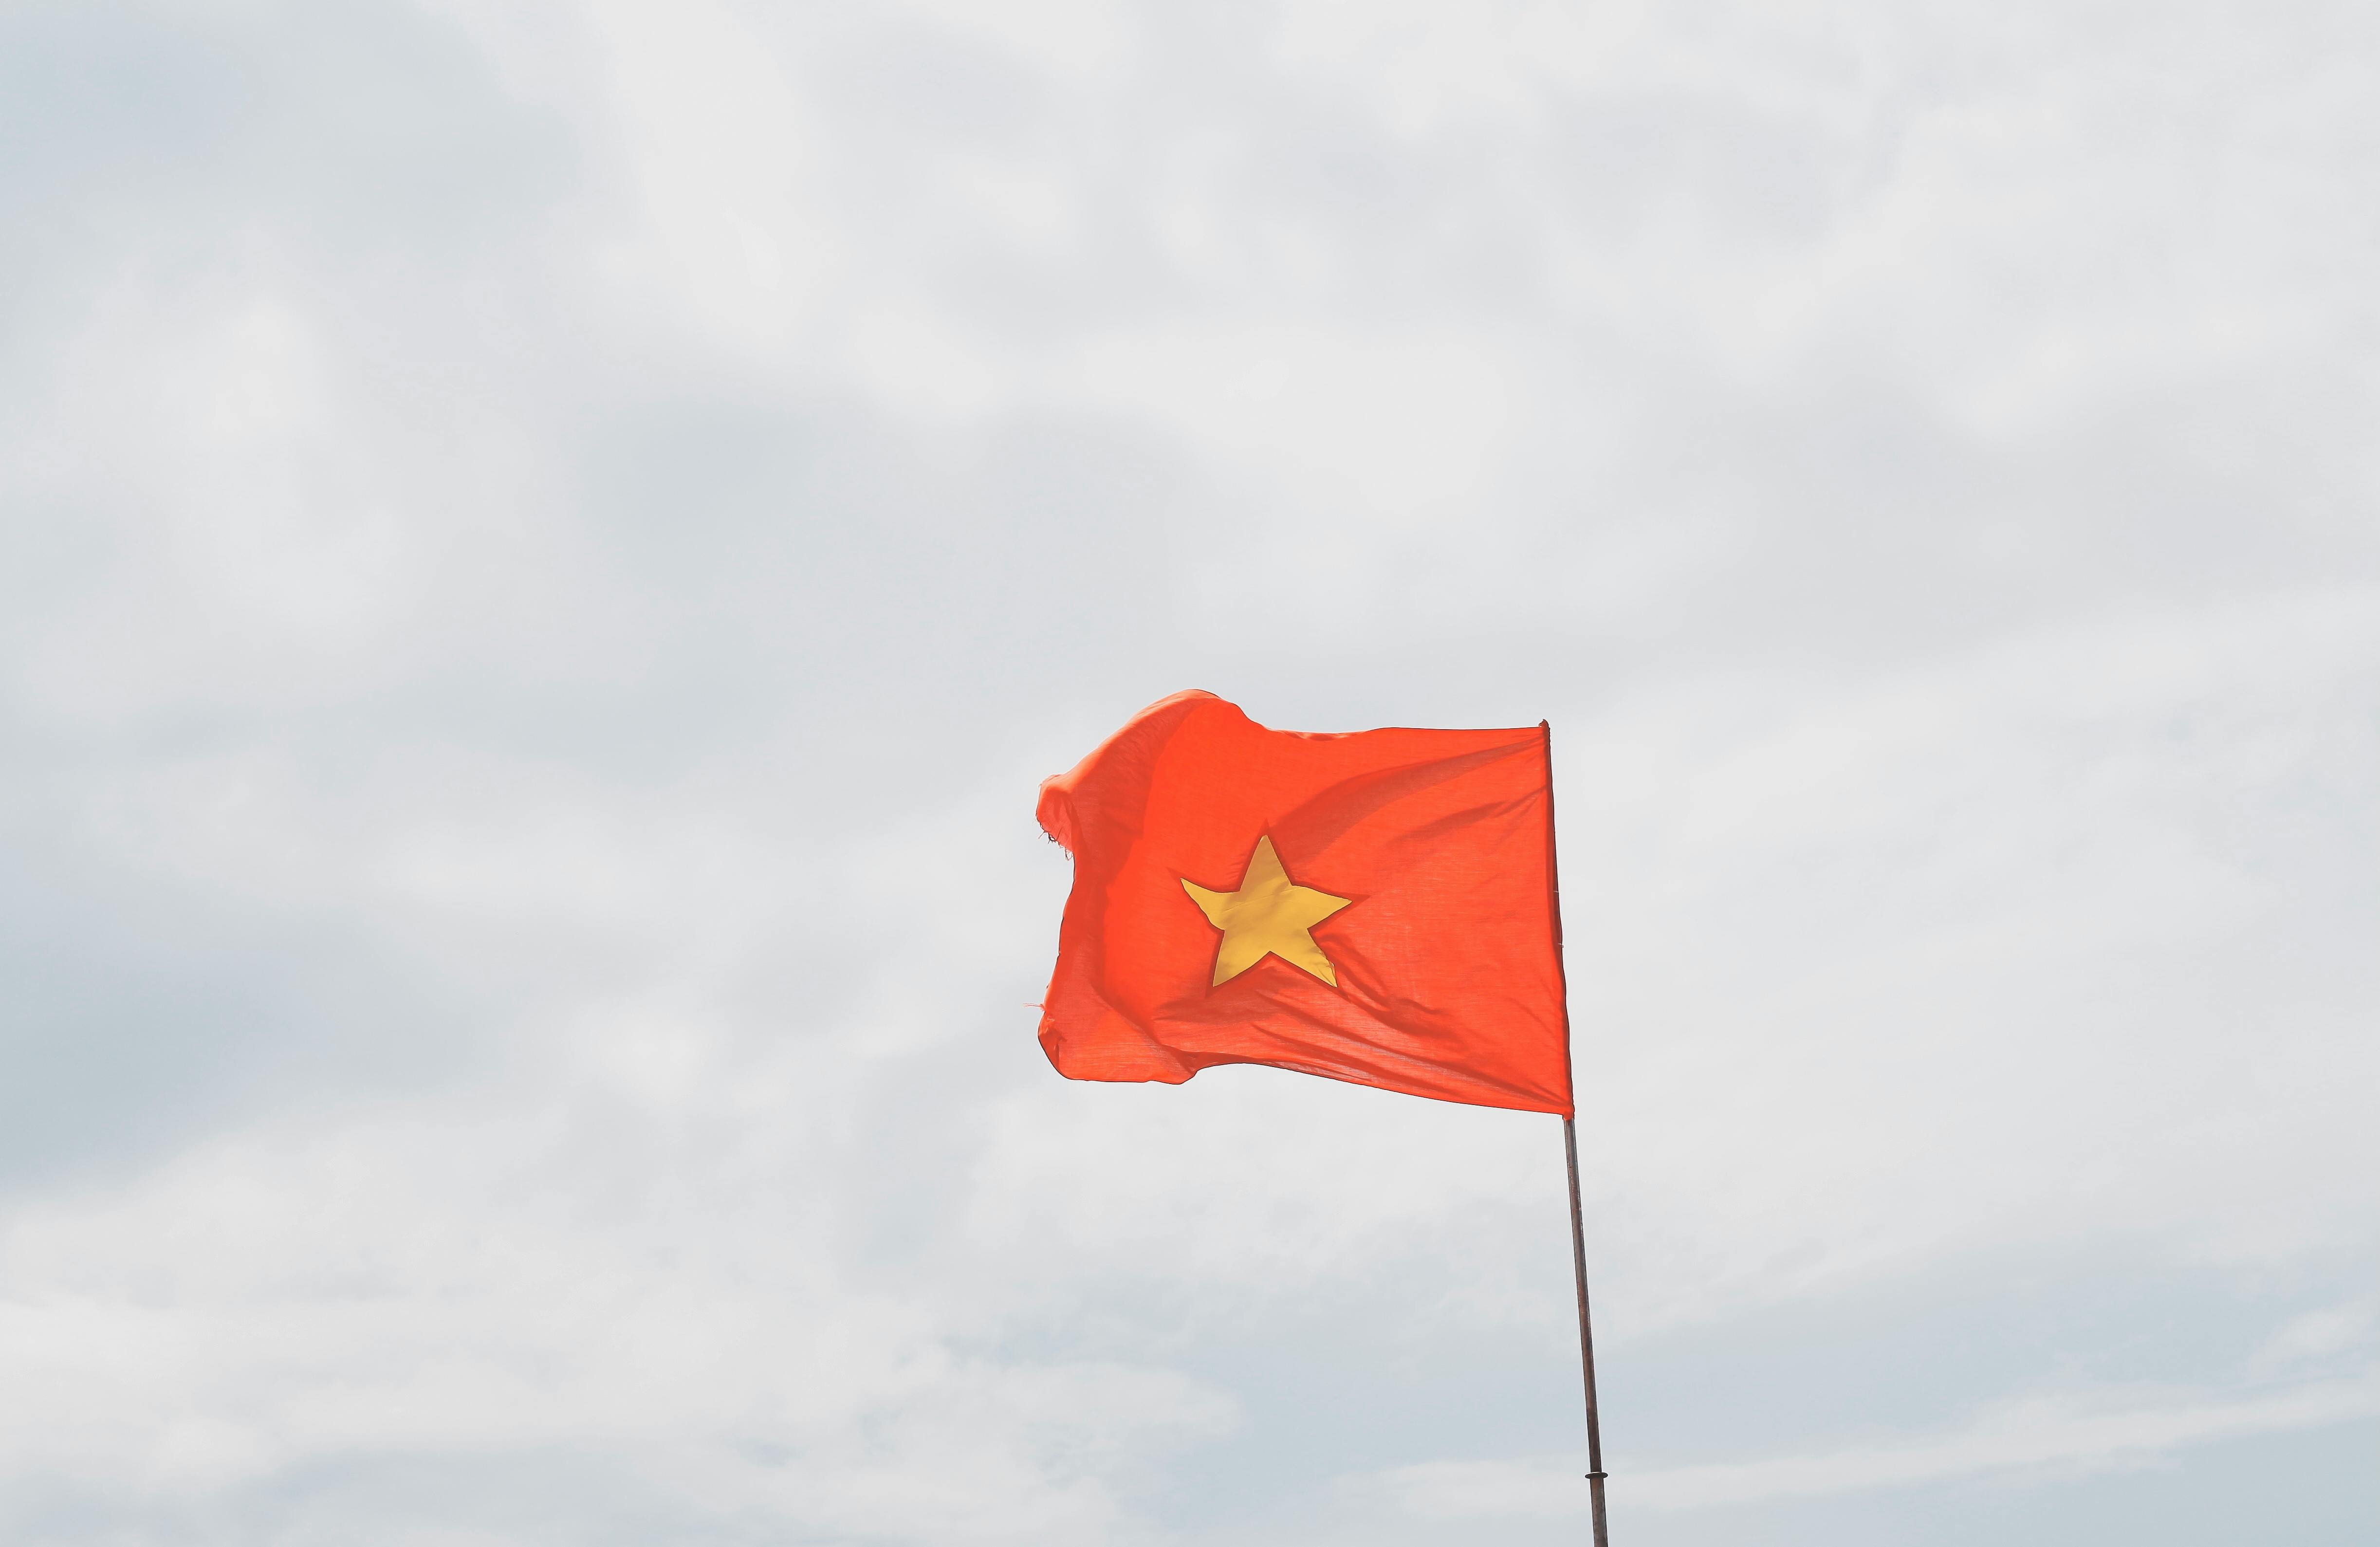 Cùng trổ tài sáng tạo và phát huy niềm tự hào dân tộc với hình ảnh của lá cờ đẹp nhất trong lòng người Việt Nam. Hãy khám phá những ý nghĩa sâu sắc của lá cờ đã đồng hành cùng dân tộc Việt Nam qua các thời kỳ lịch sử.